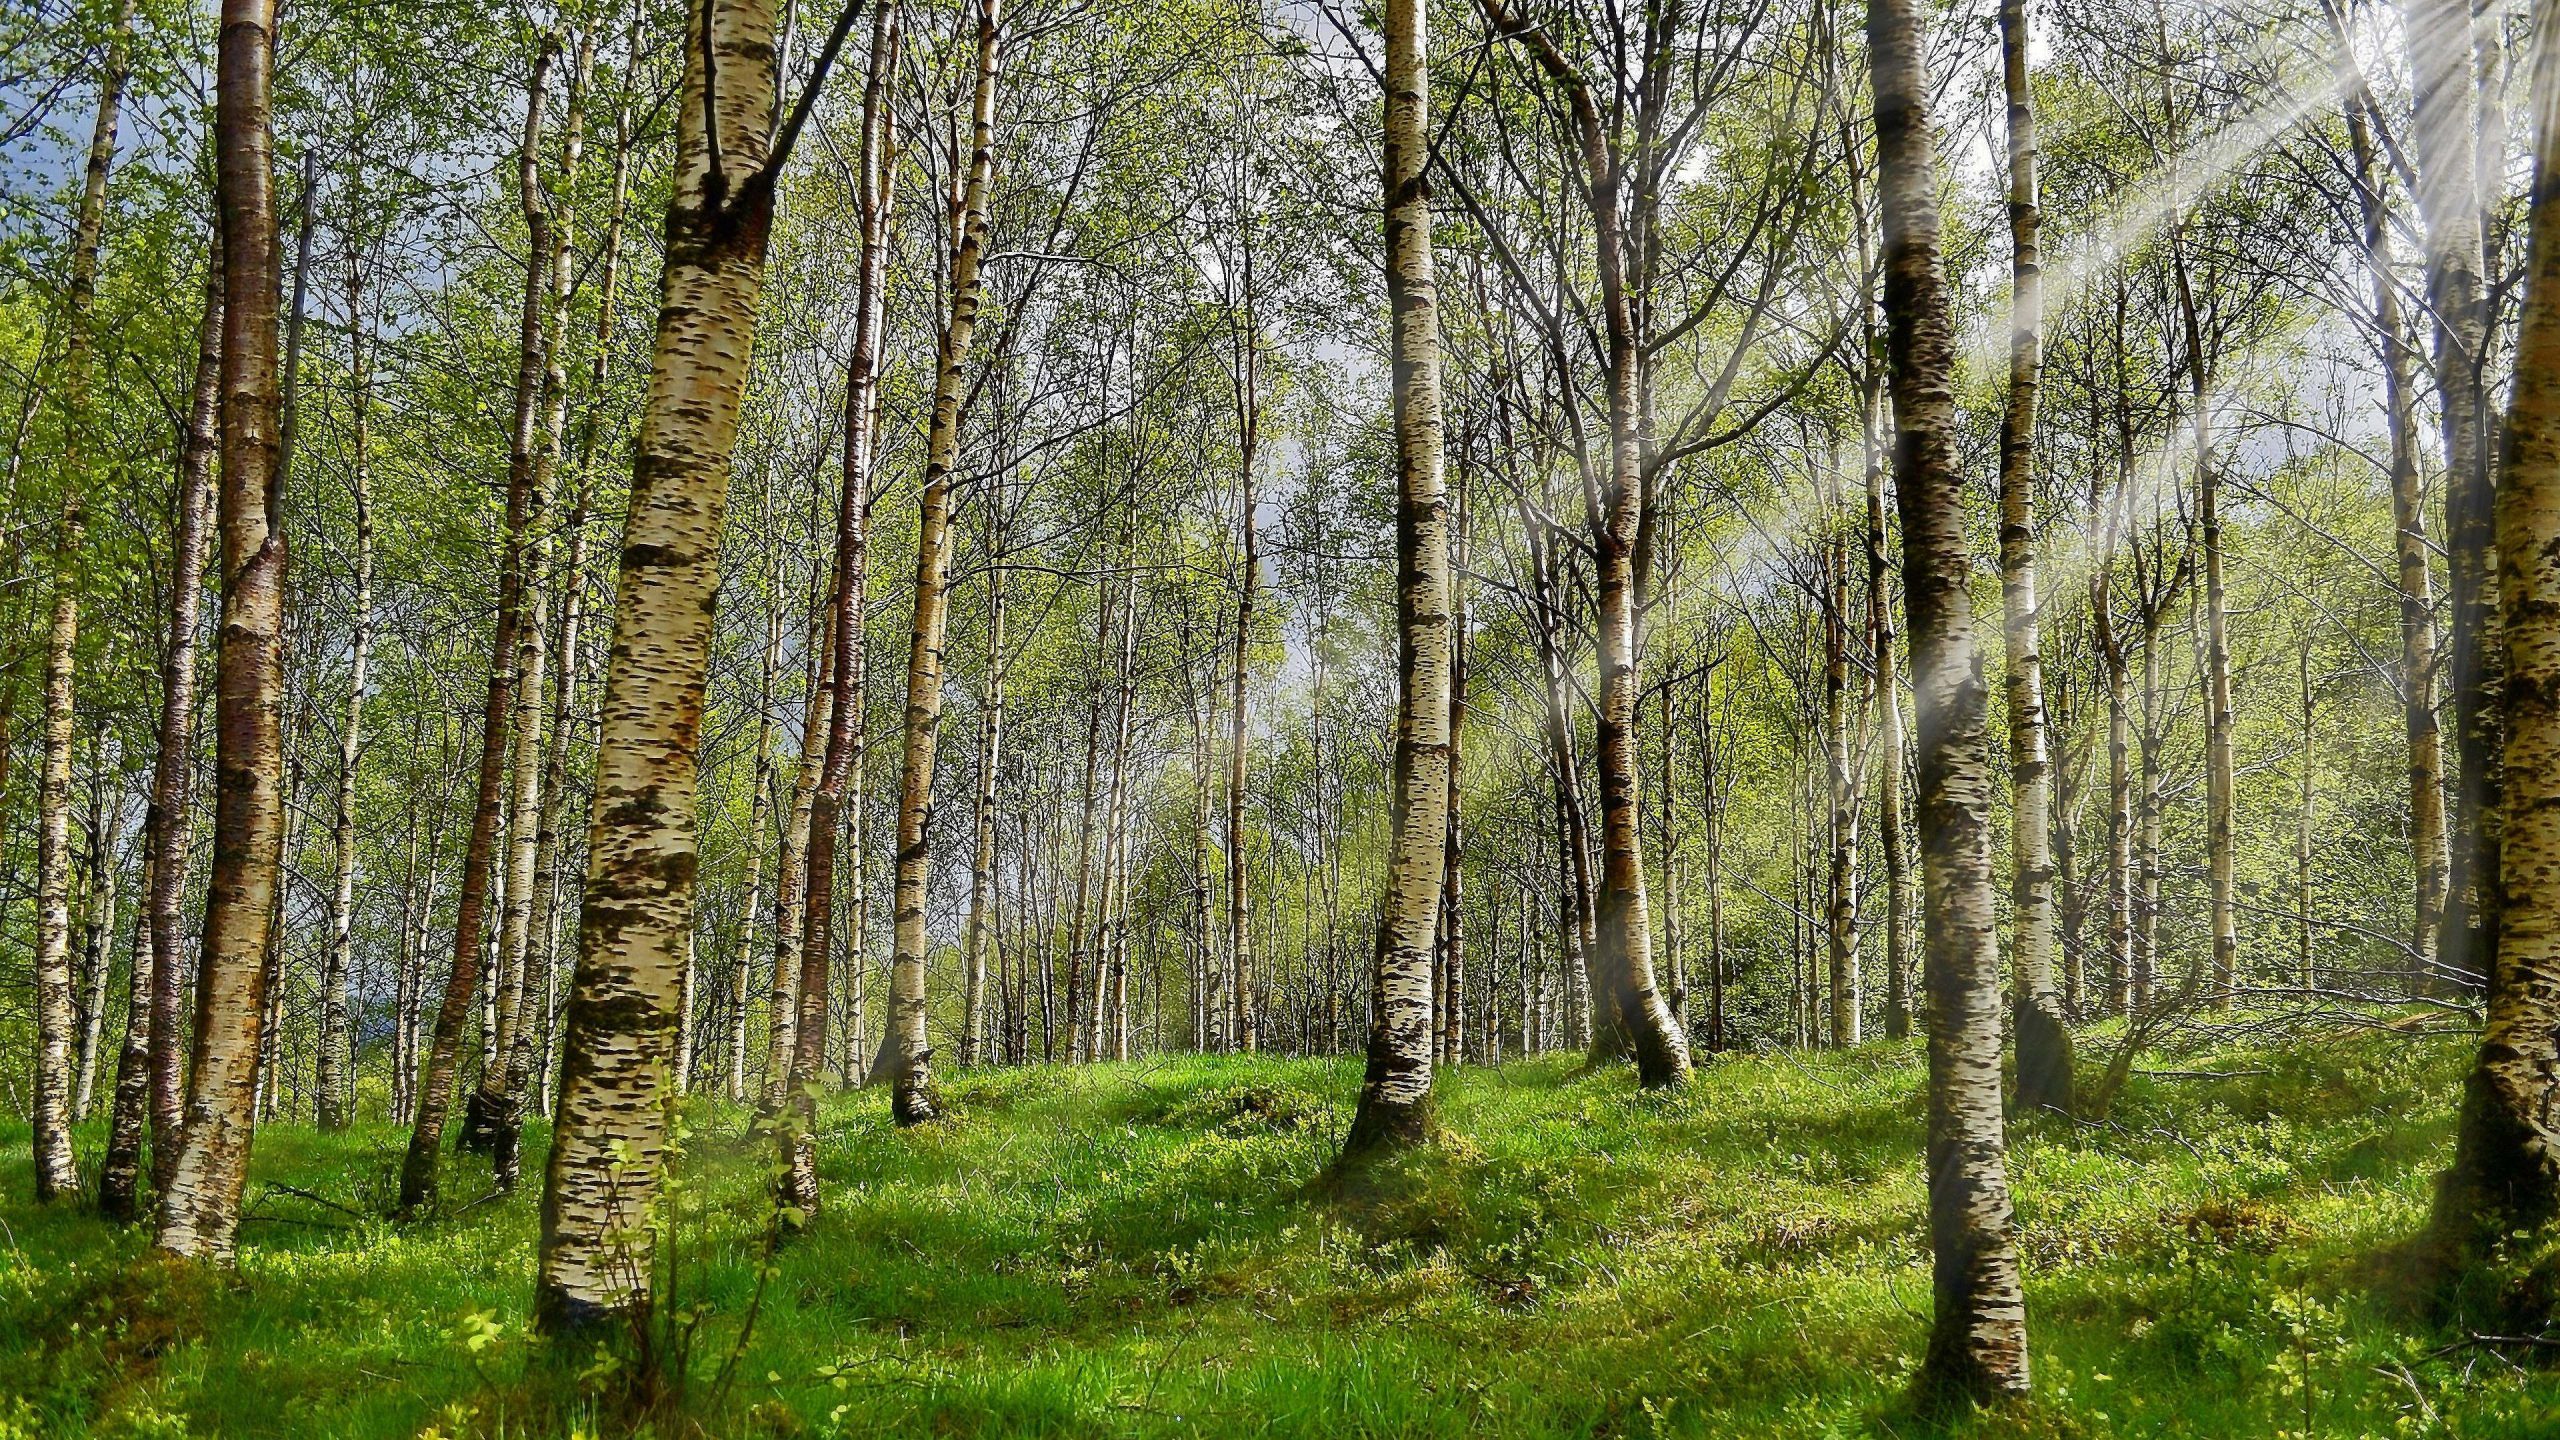 31 Wald Bilder Zum Ausdrucken - Besten Bilder Von Ausmalbilder bestimmt für Bilder Vom Wald Zum Ausdrucken